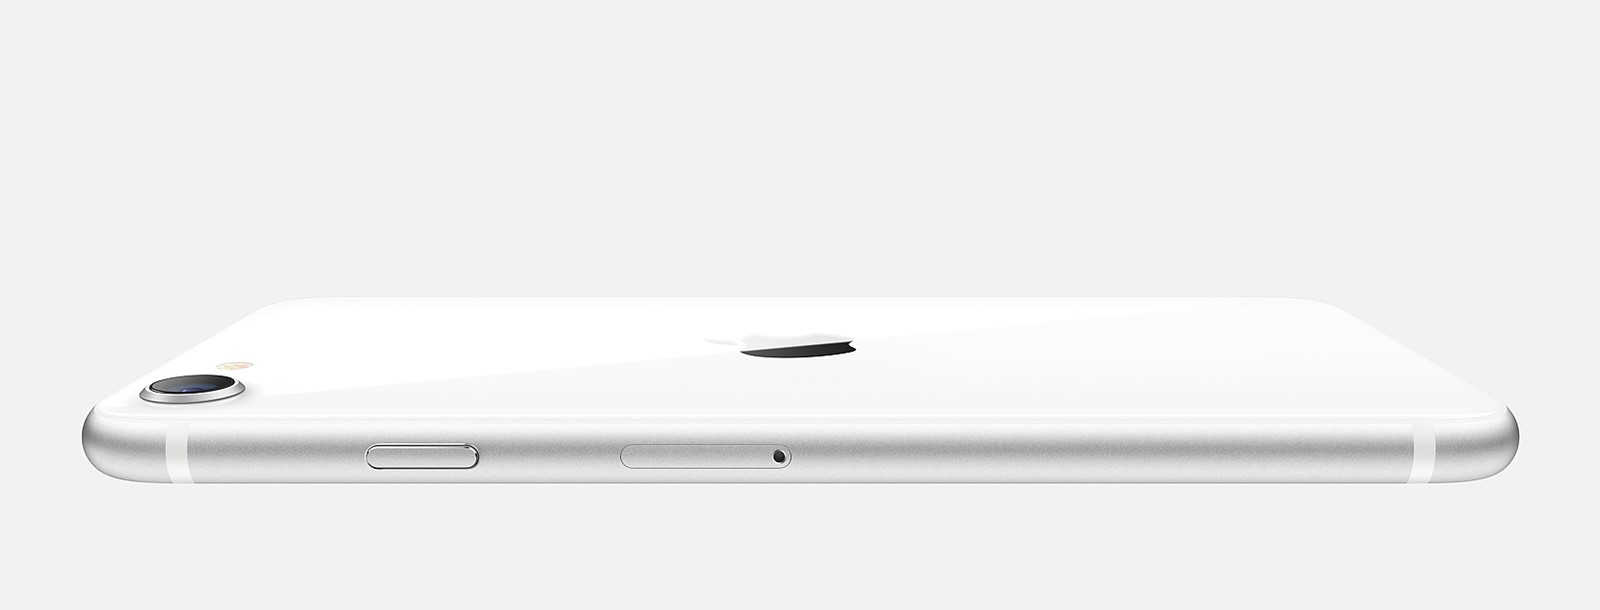 Stigao je najjeftiniji Appleov mobitel, iPhone SE (2020) - Mobiteli @ Bug.hr